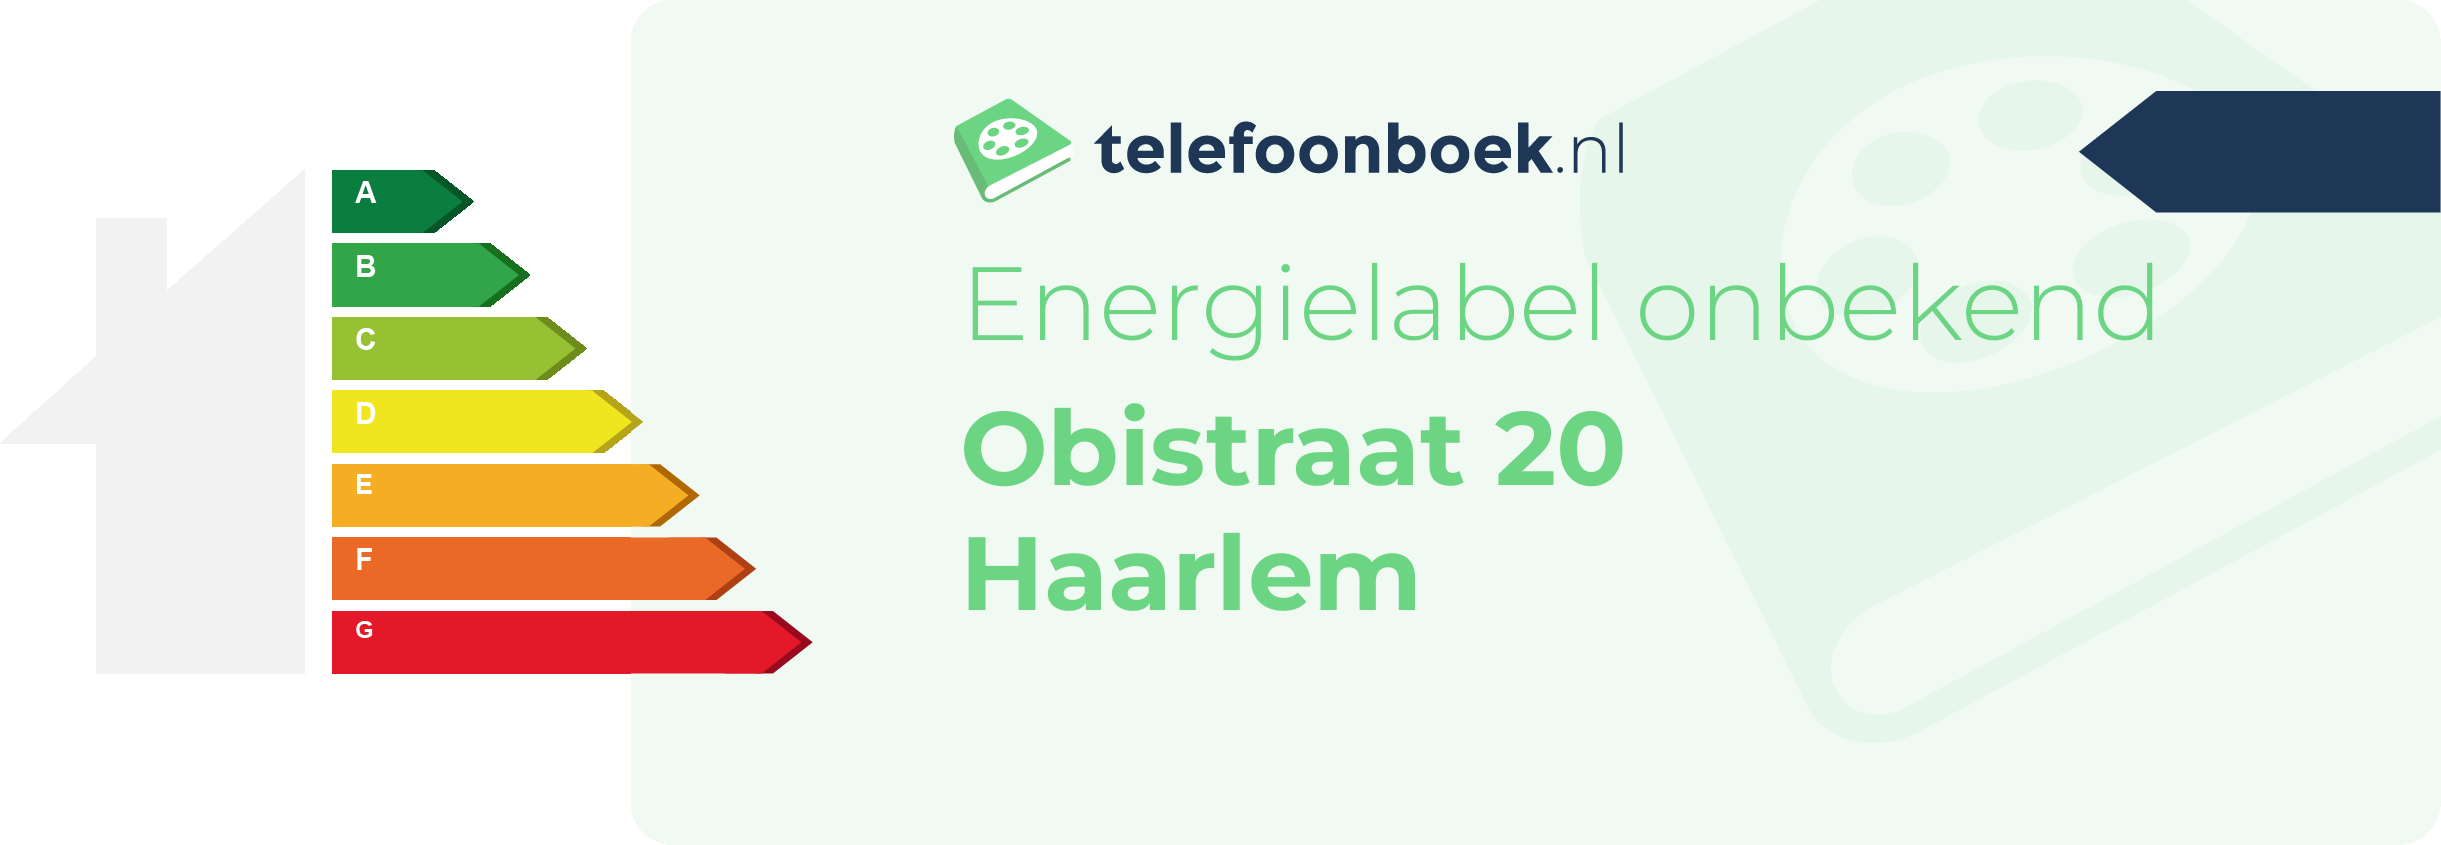 Energielabel Obistraat 20 Haarlem